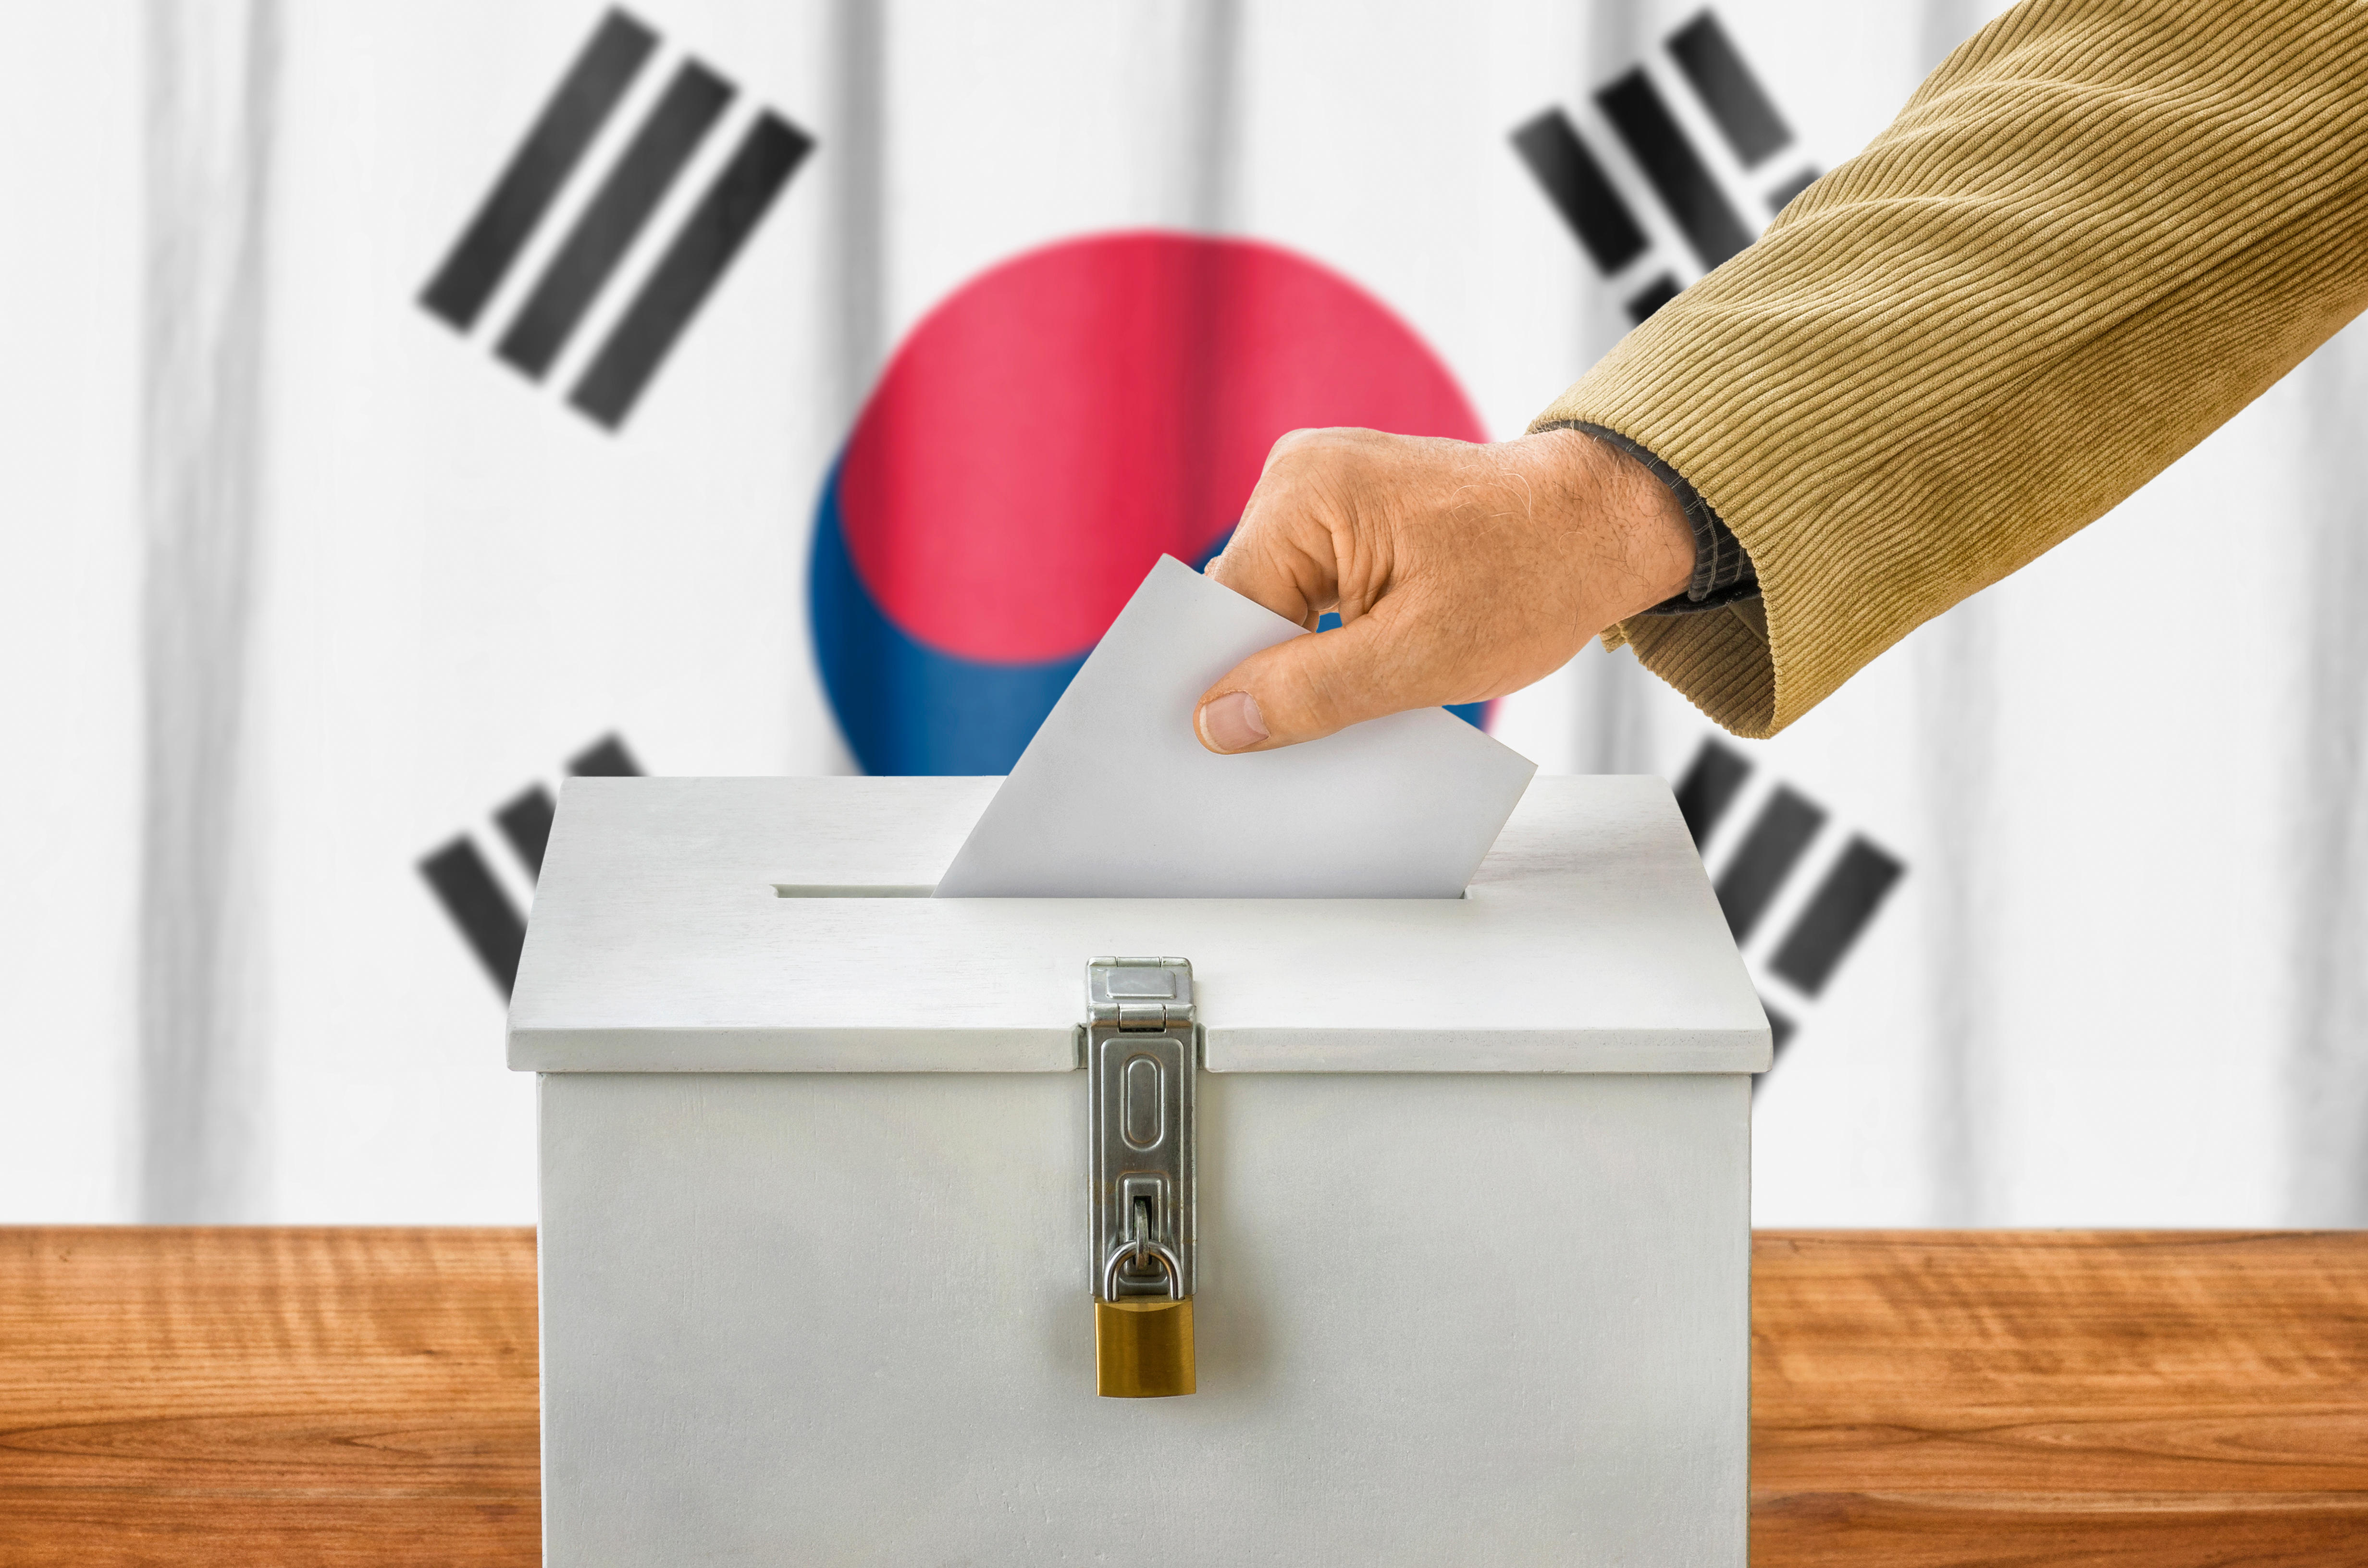 https://eu-images.contentstack.com/v3/assets/blt6d90778a997de1cd/bltd54801db52c4217b/65eb6a0a071f9d040adb4aac/Korean_election-Panther_Media_GmbH-Alamy.jpg